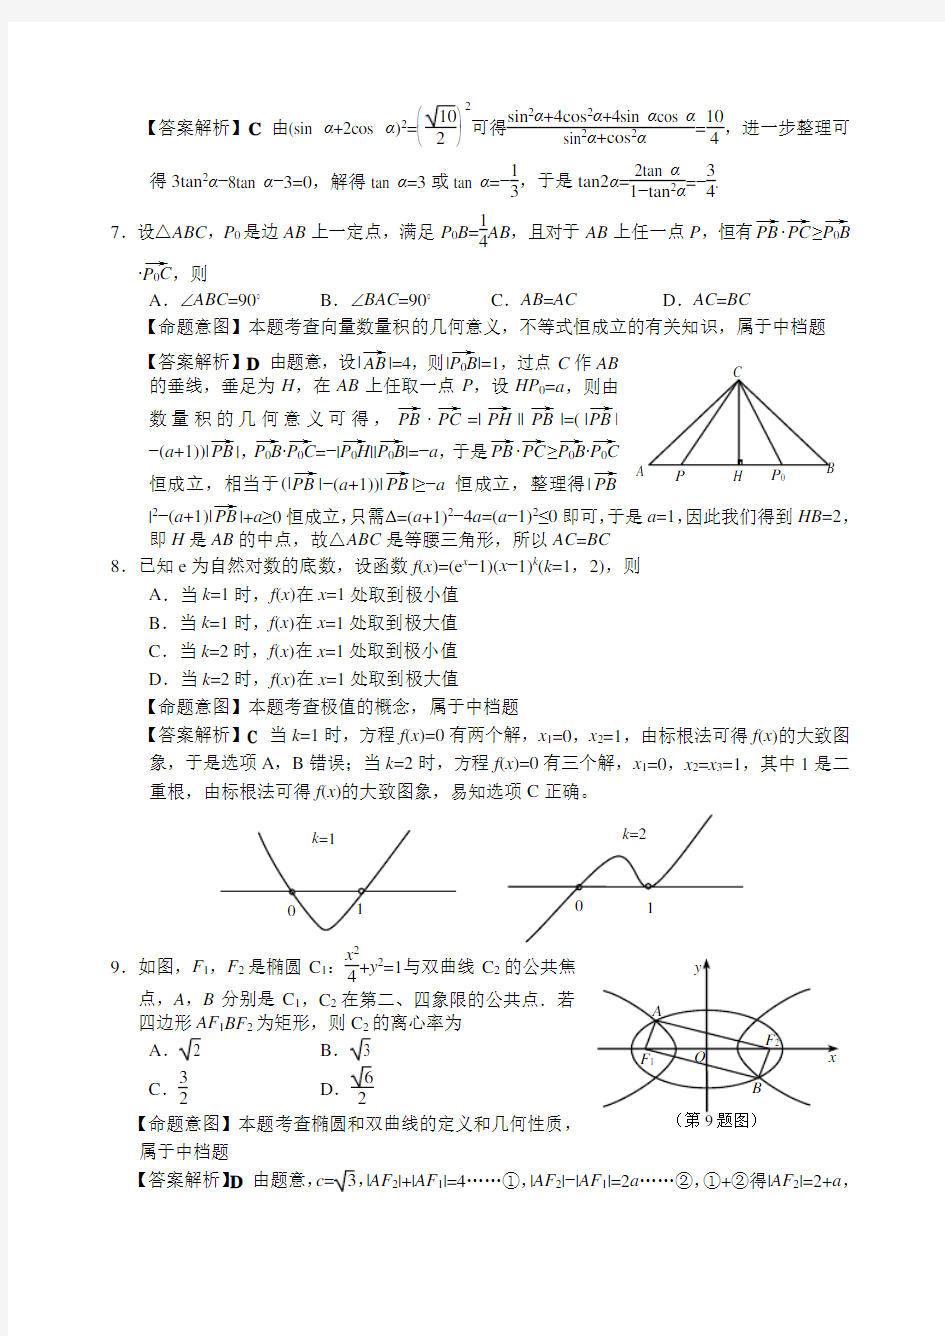 2013年高考理科数学浙江卷试题及答案解析